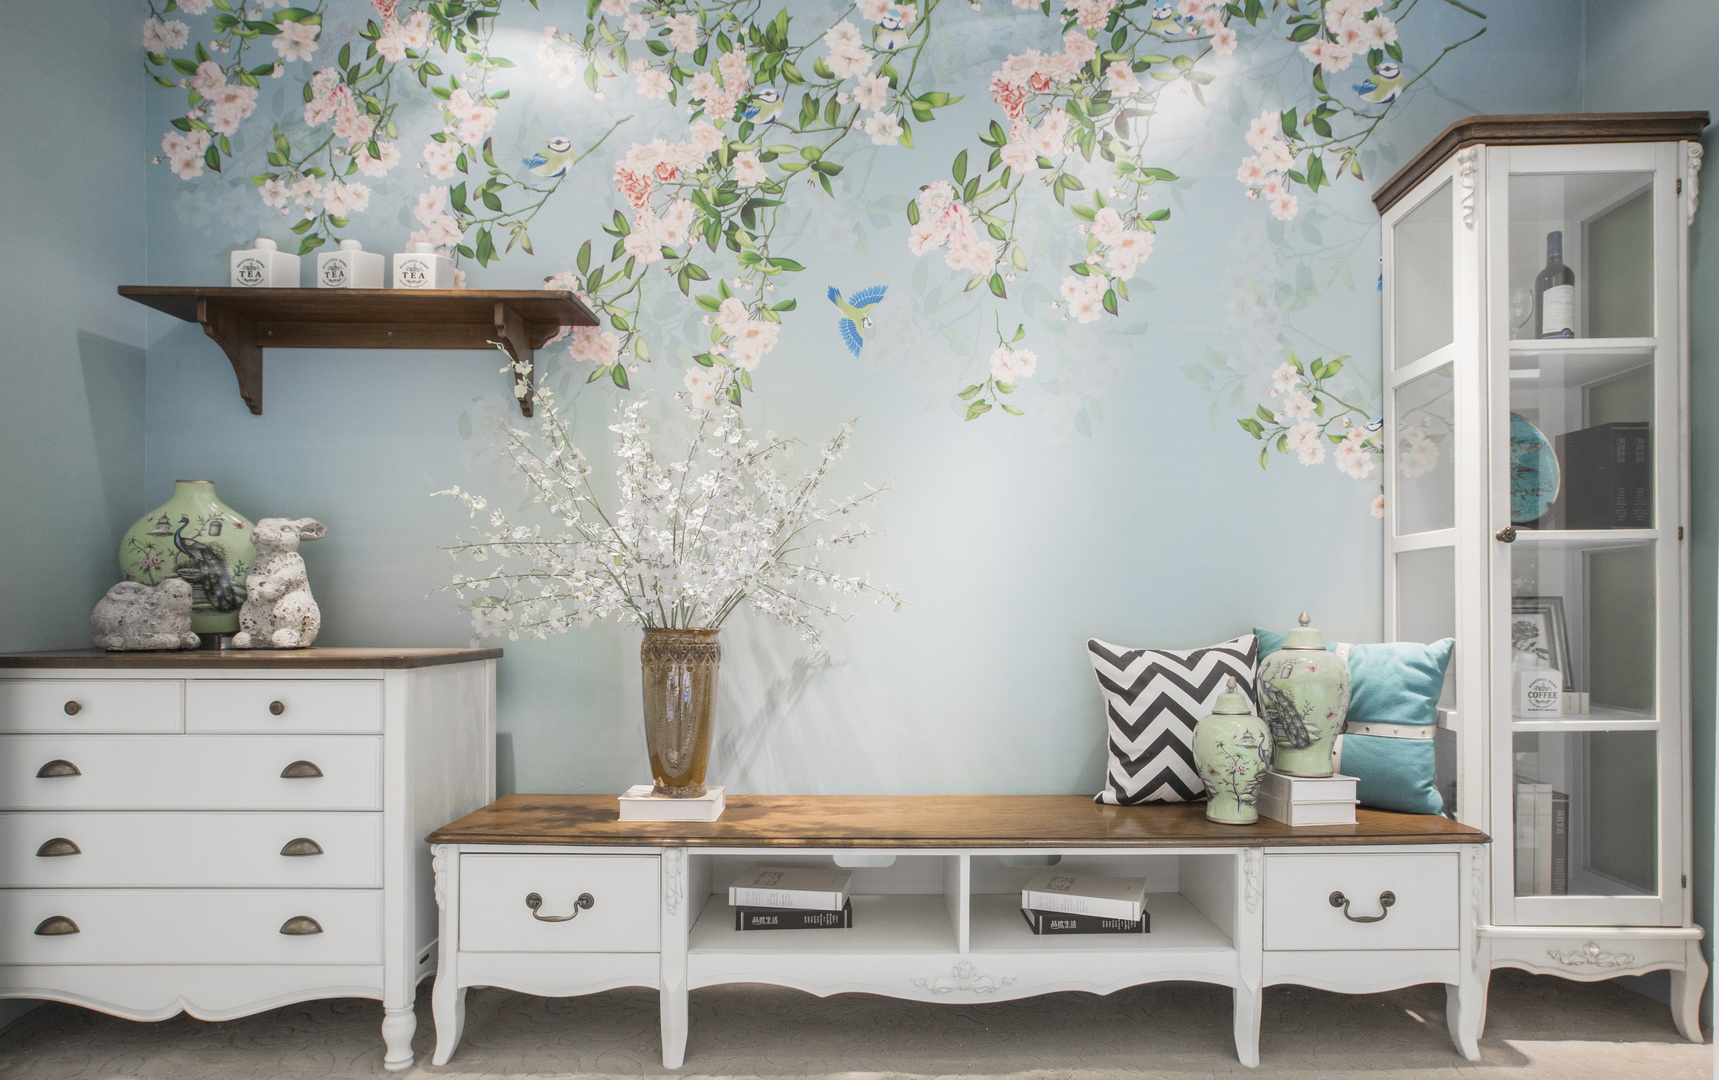 墙壁上的印花成了巨大的装饰，在一片繁花下，白色的家具显得洁净清爽。不同颜色的靠枕，桌上摆的饰物都让纯白显得不再单调。